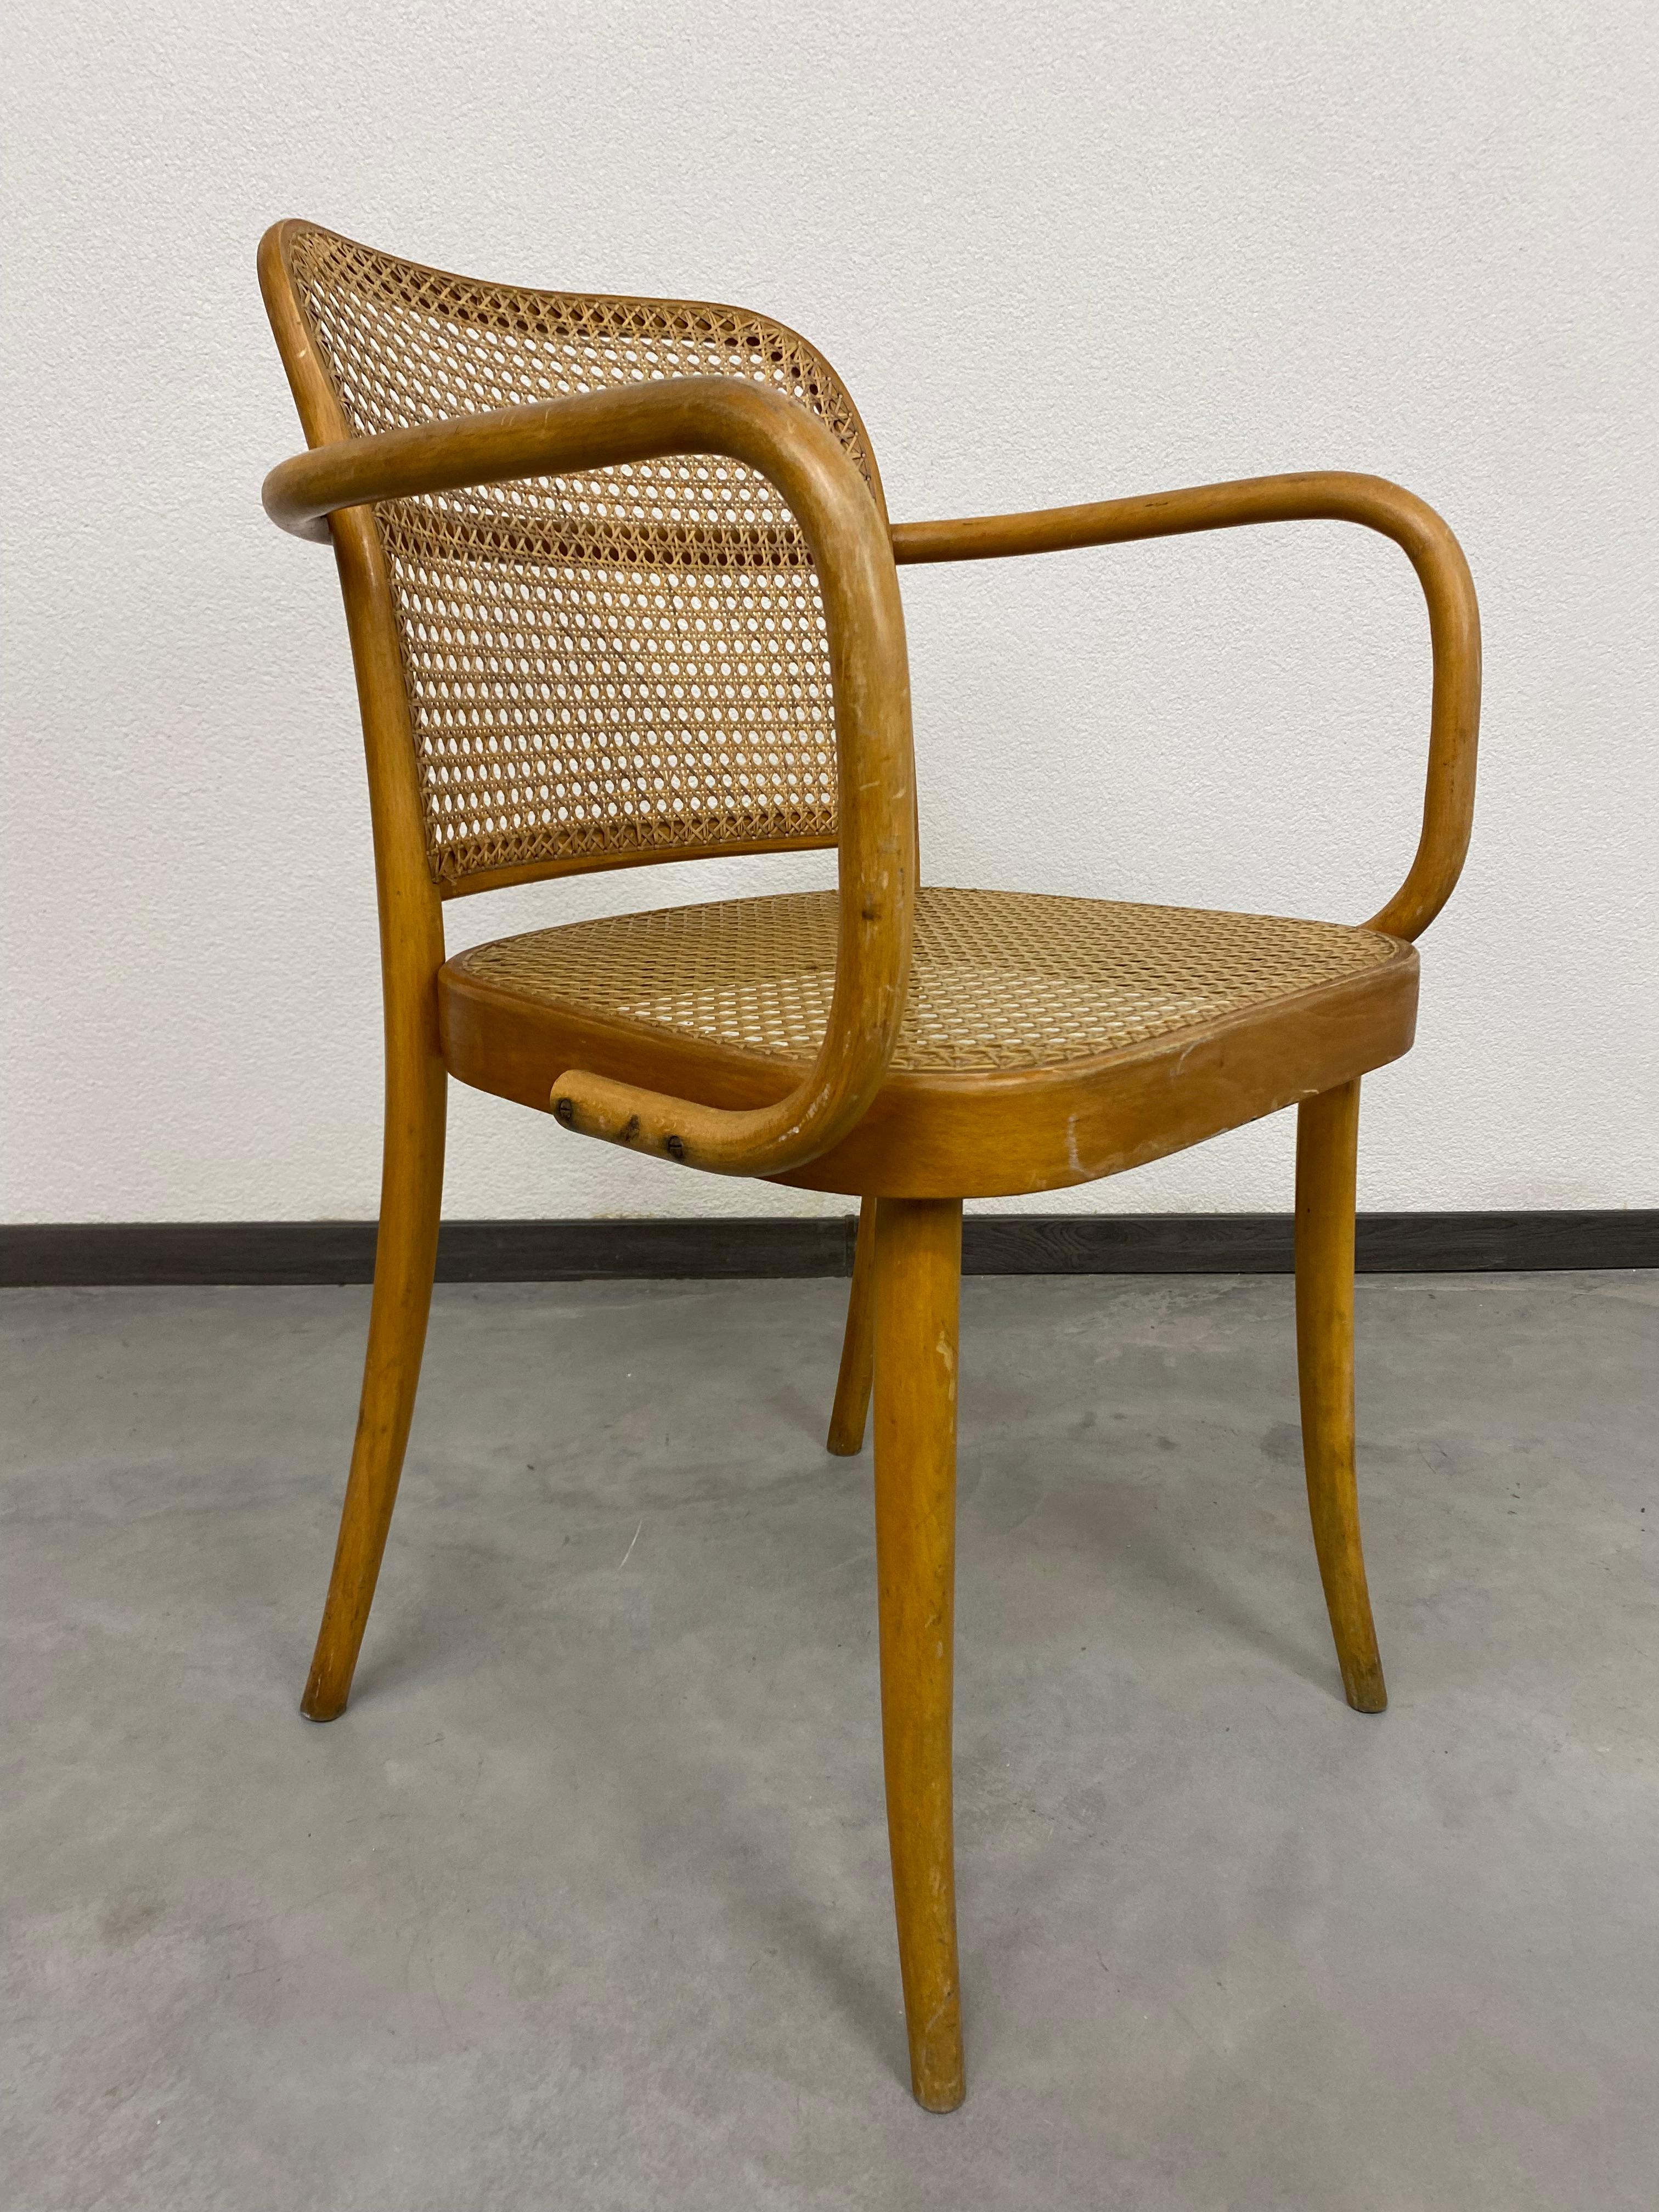 josef hoffmann thonet chair